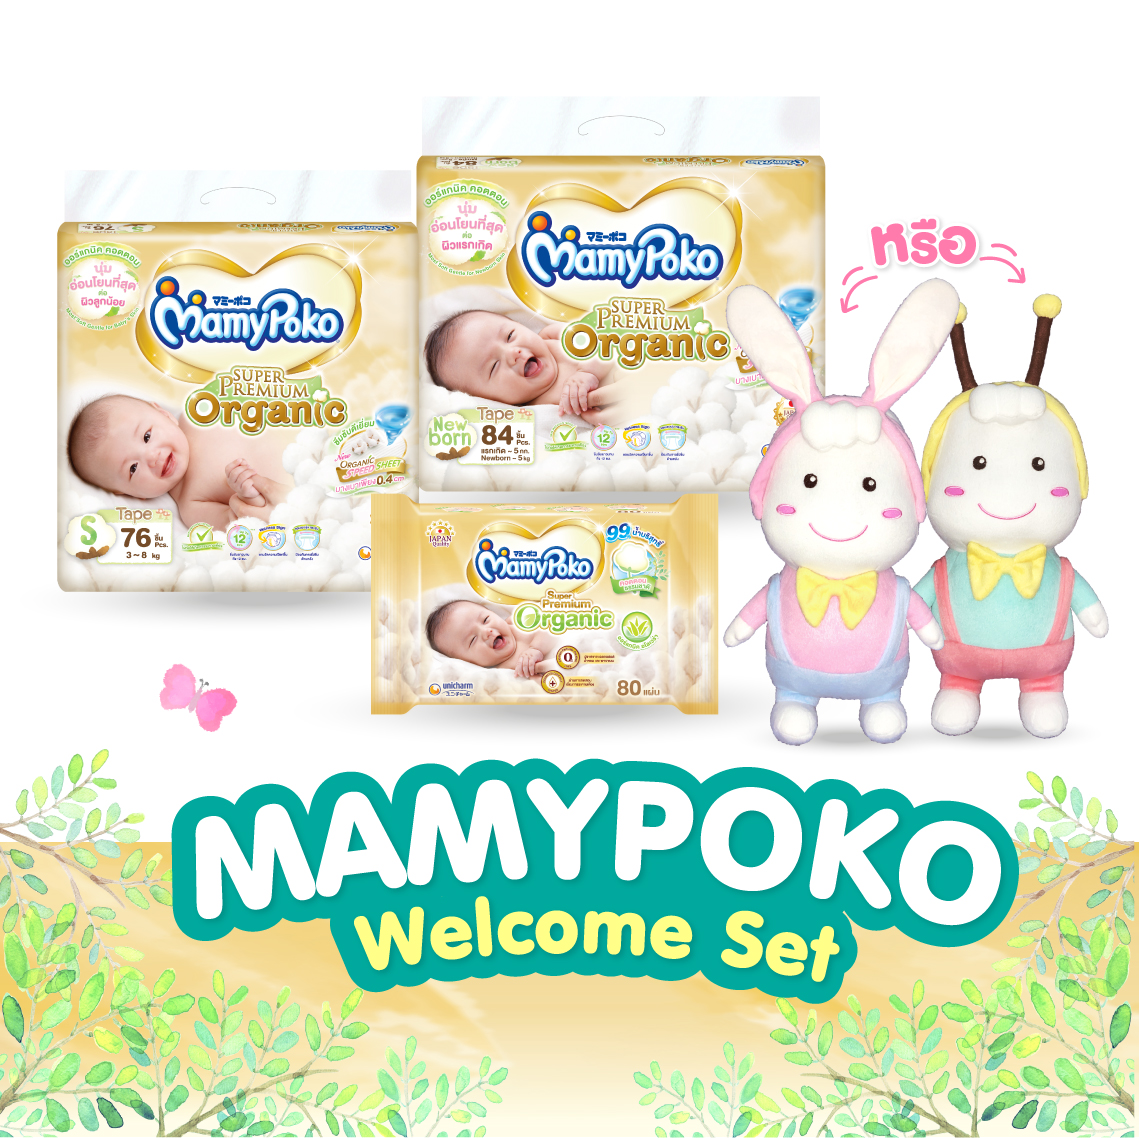 [ส่งฟรี] ชุดของขวัญต้อนรับคุณแม่คนใหม่ MamyPoko Welcome New Mom Gift Set (ผ้าอ้อม MamyPoko Tape Super Premium Organic NB, S + ผ้านุ่มชุ่มชื่น MamyPoko Wipes Box + ตุ๊กตา Poko Chan